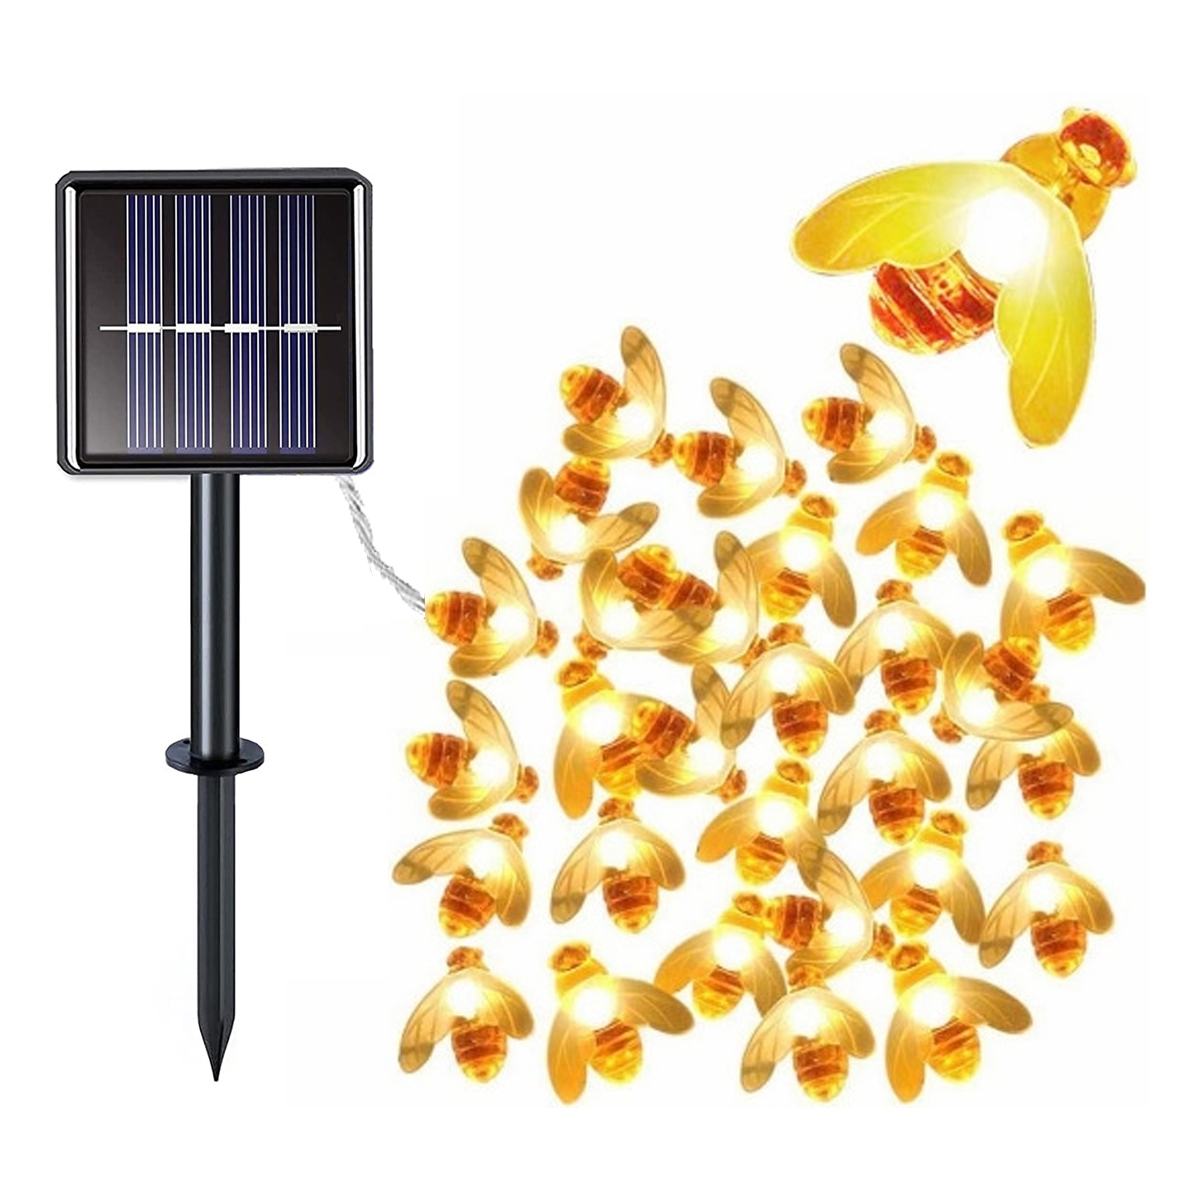 LAMON Solar-Lichterkette Biene, Solar-Lichterkette, Bienenleuchten, Solar-Lichterketten, Lichterkette, Biene Warmweiß Lichter 7m Kleine 50